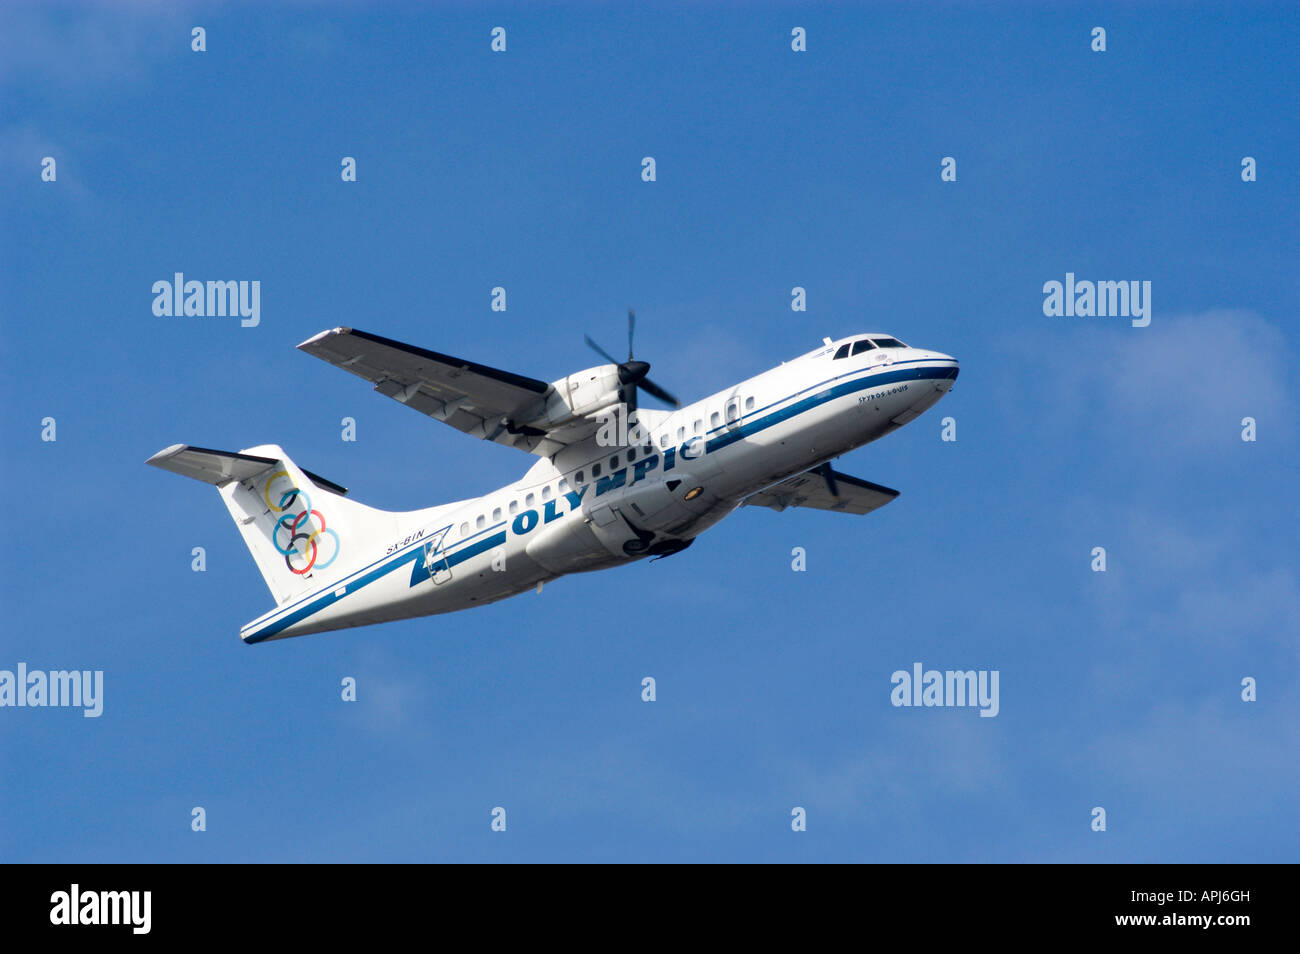 ATR 42 turboelica aerei ad elica dal greco "Olympic Airlines' dopo il decollo Foto Stock